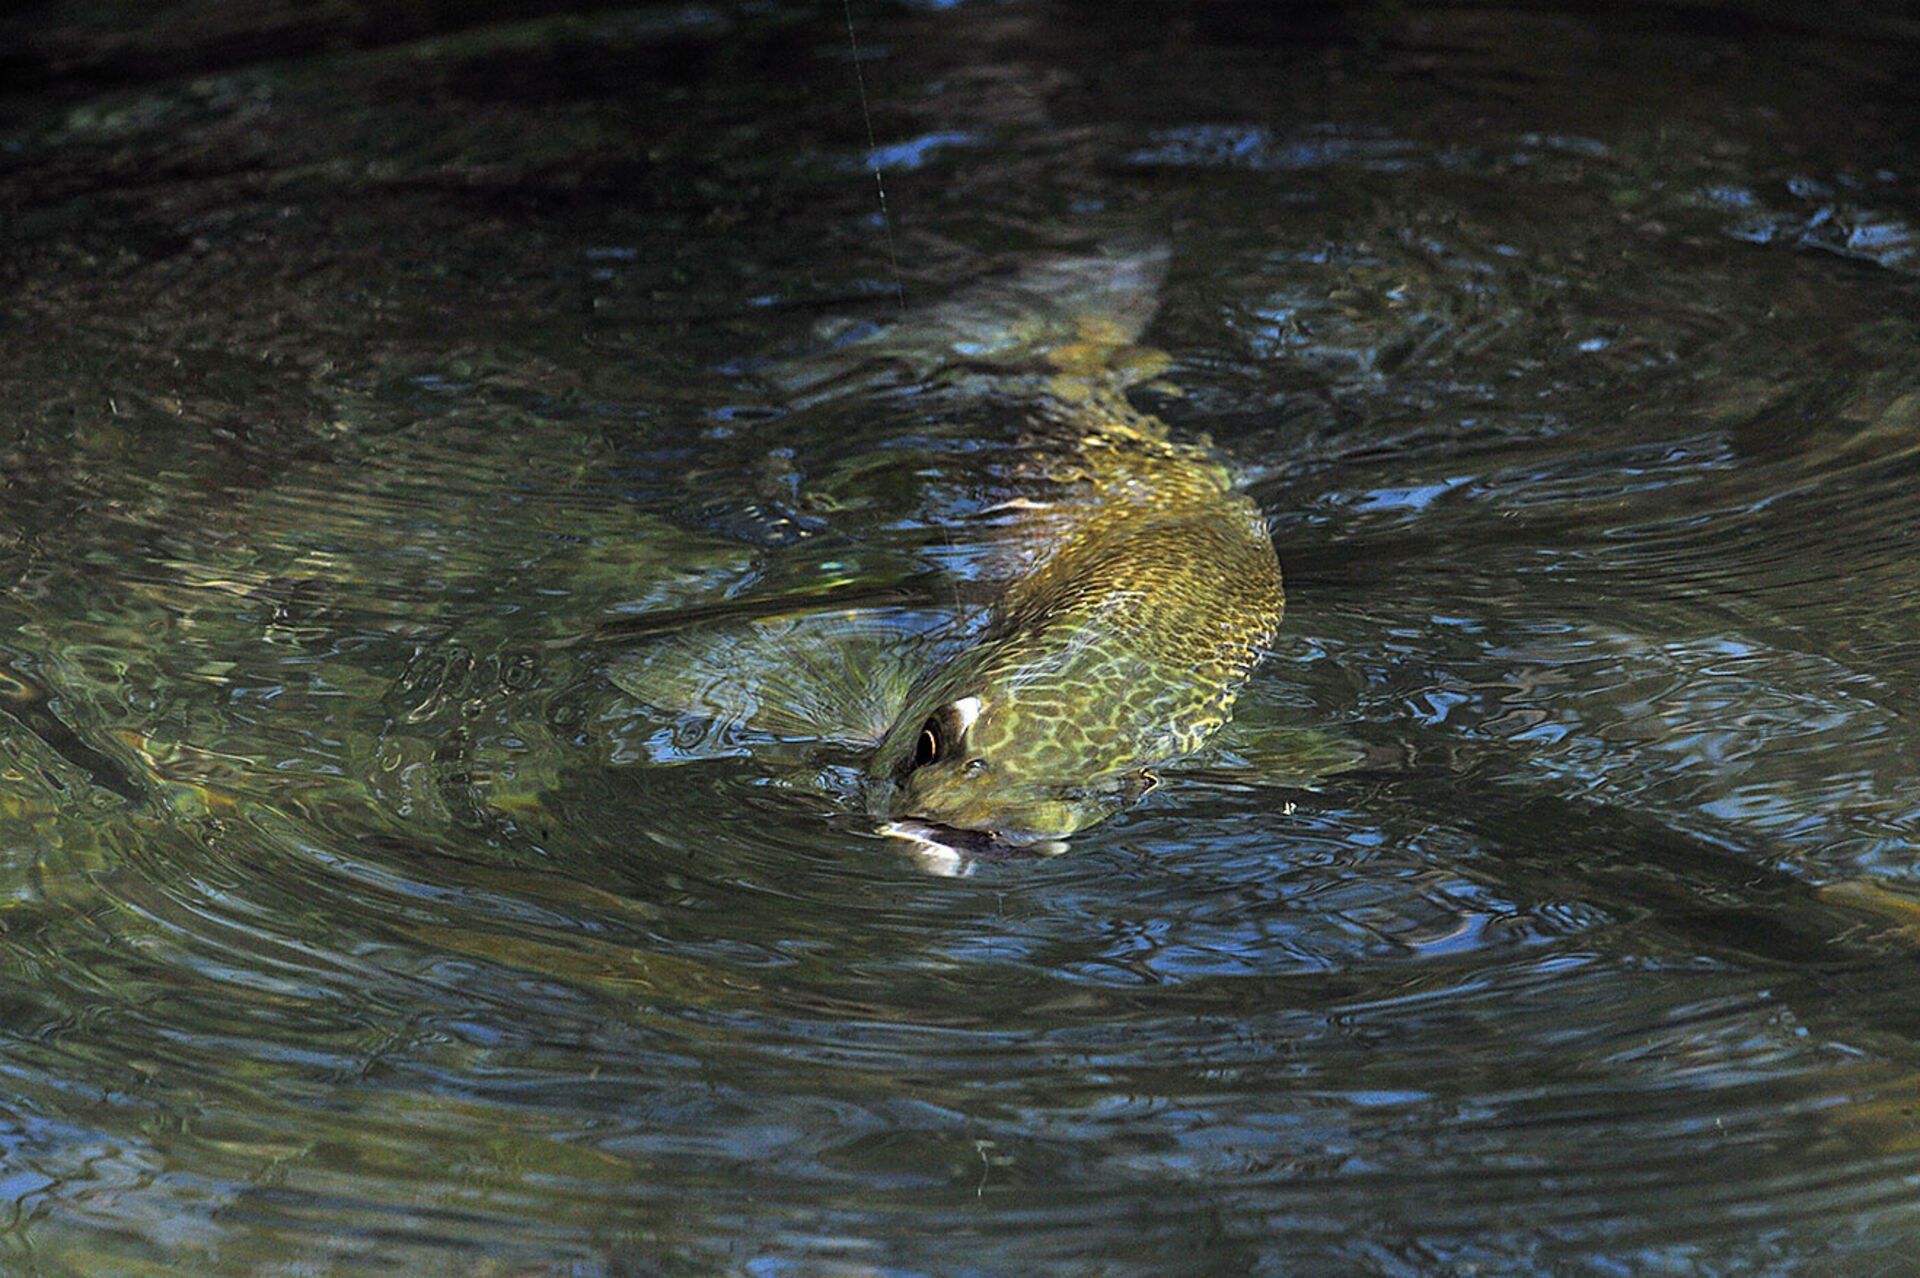  Ein Fisch wie aus einer anderen Welt. Einst im Einzugsgebiet der Adria weit verbreitet, ist die reinrassige Marmorata (Salmo marmoratus) heutzutage selten und akut bedroht.   